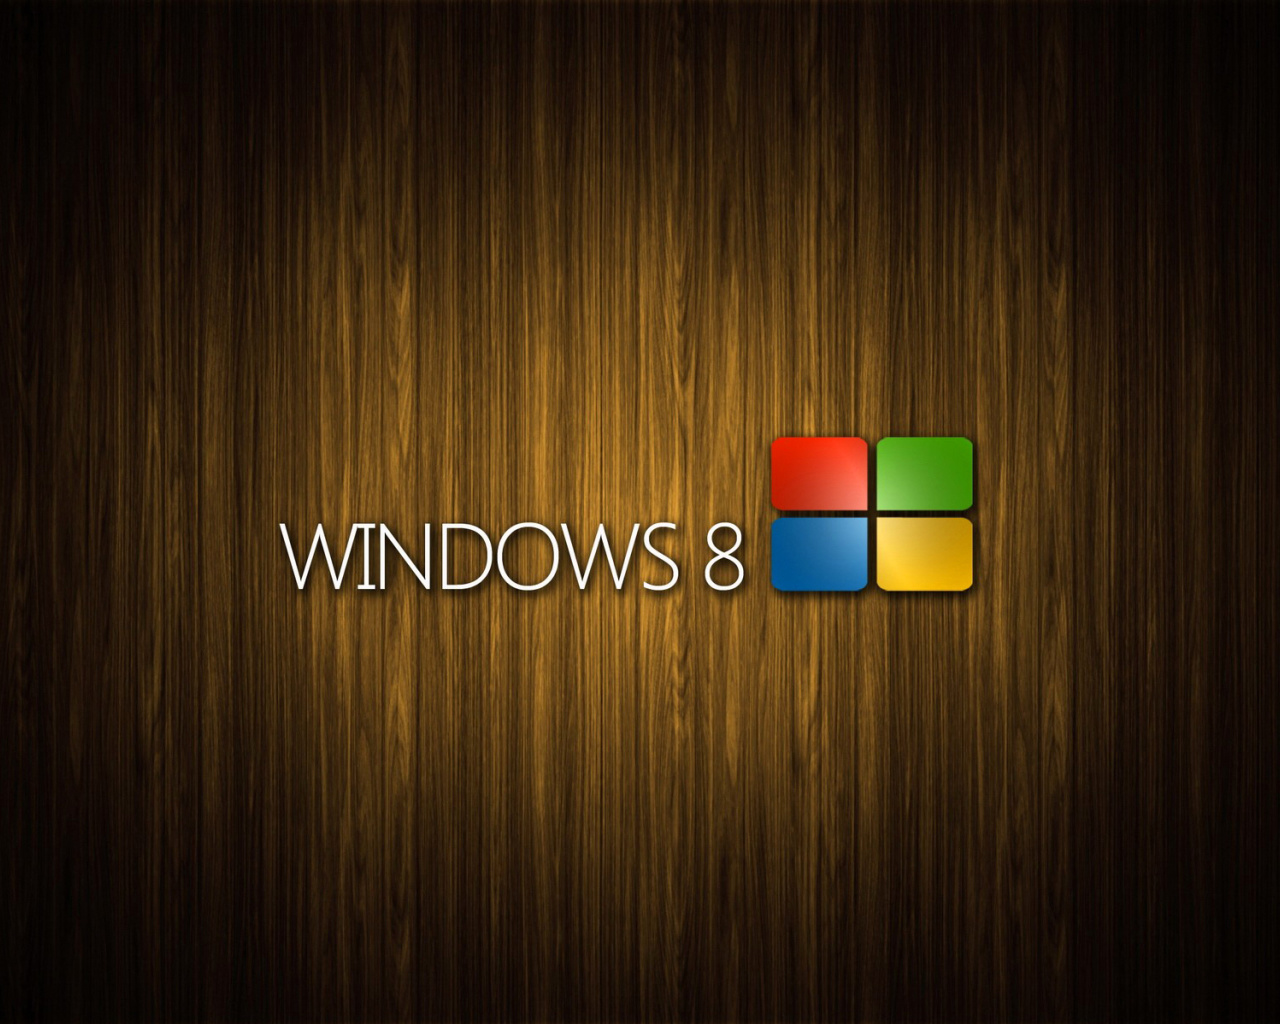 Обои Windows 8 Wooden Emblem 1280x1024